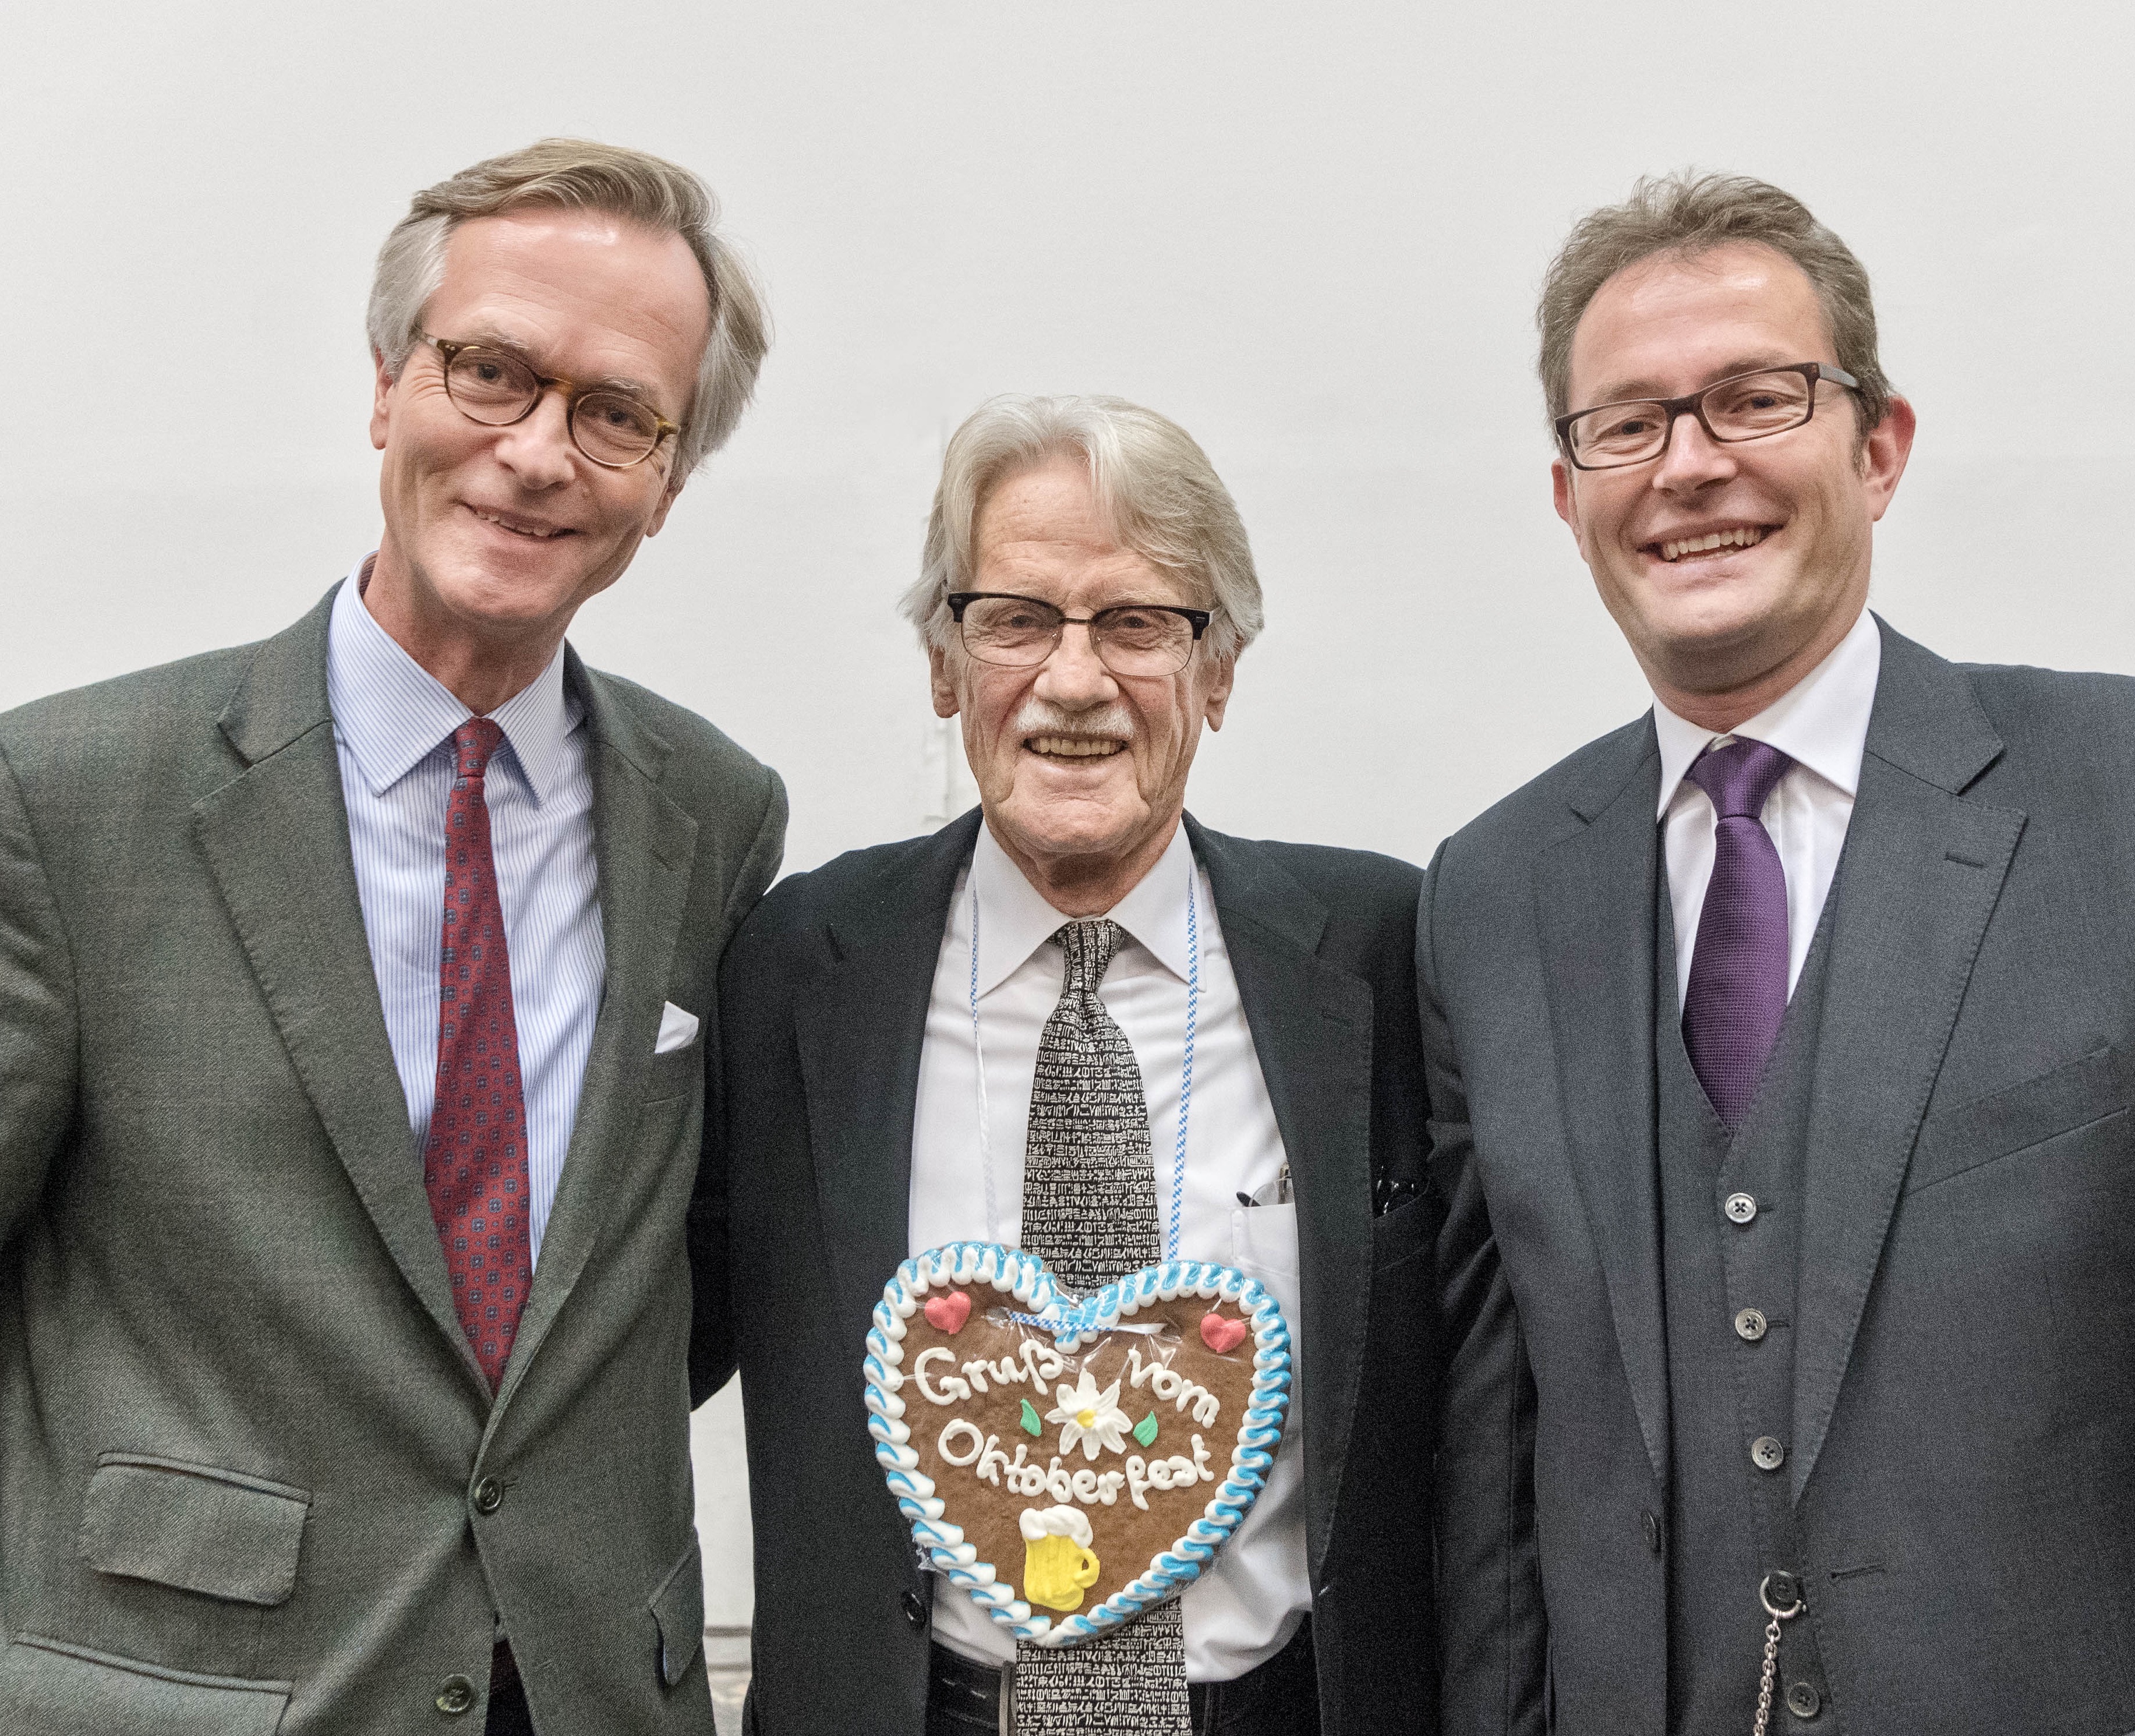 With Vernon Smith and Robert von Weizsäcker, TUM 2016 (Munich Lecture in Business Ethics)